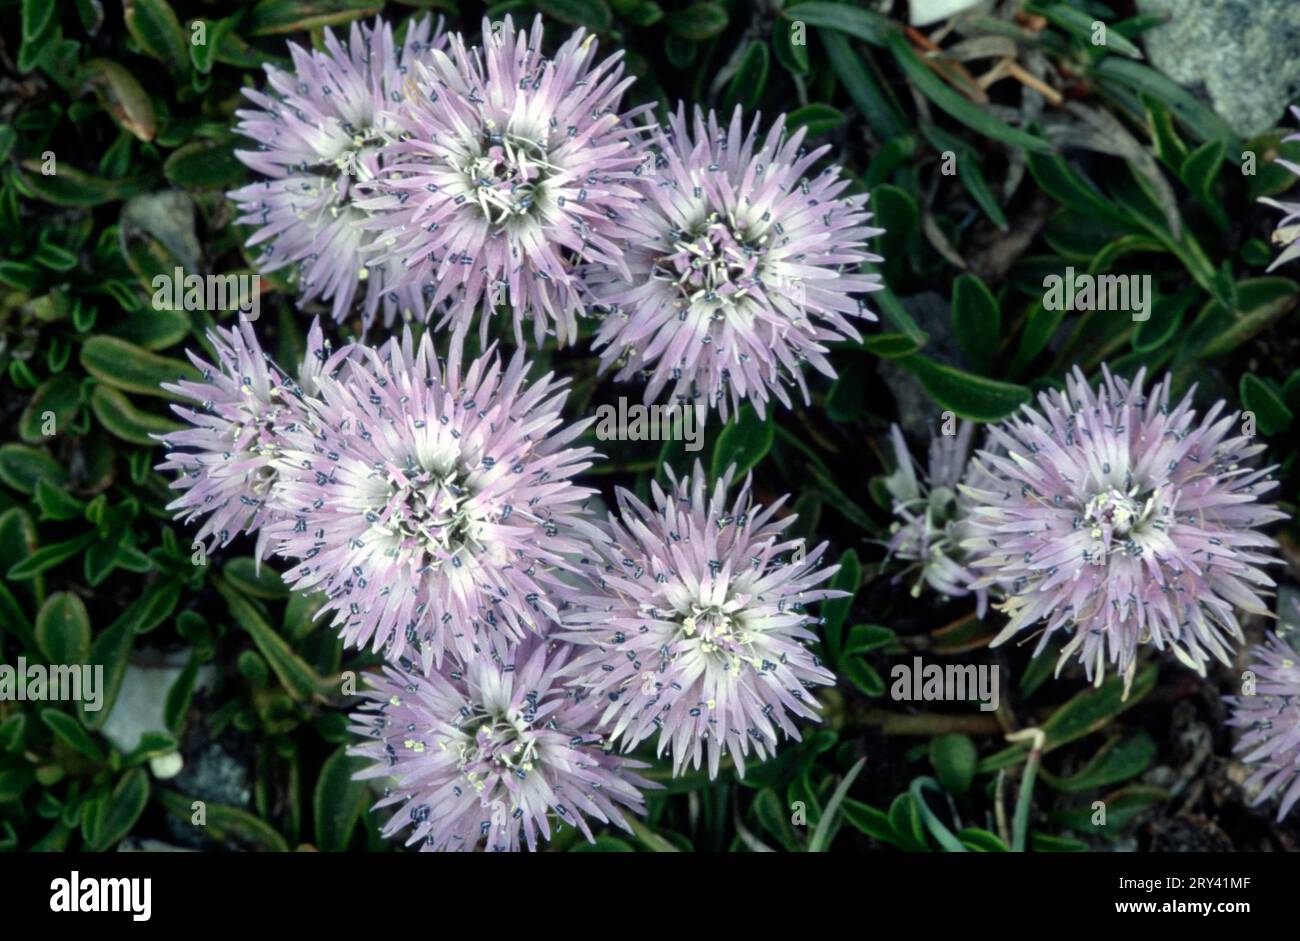 Globularia, Provence, Southern France (Globularia nudicaulis) Stock Photo